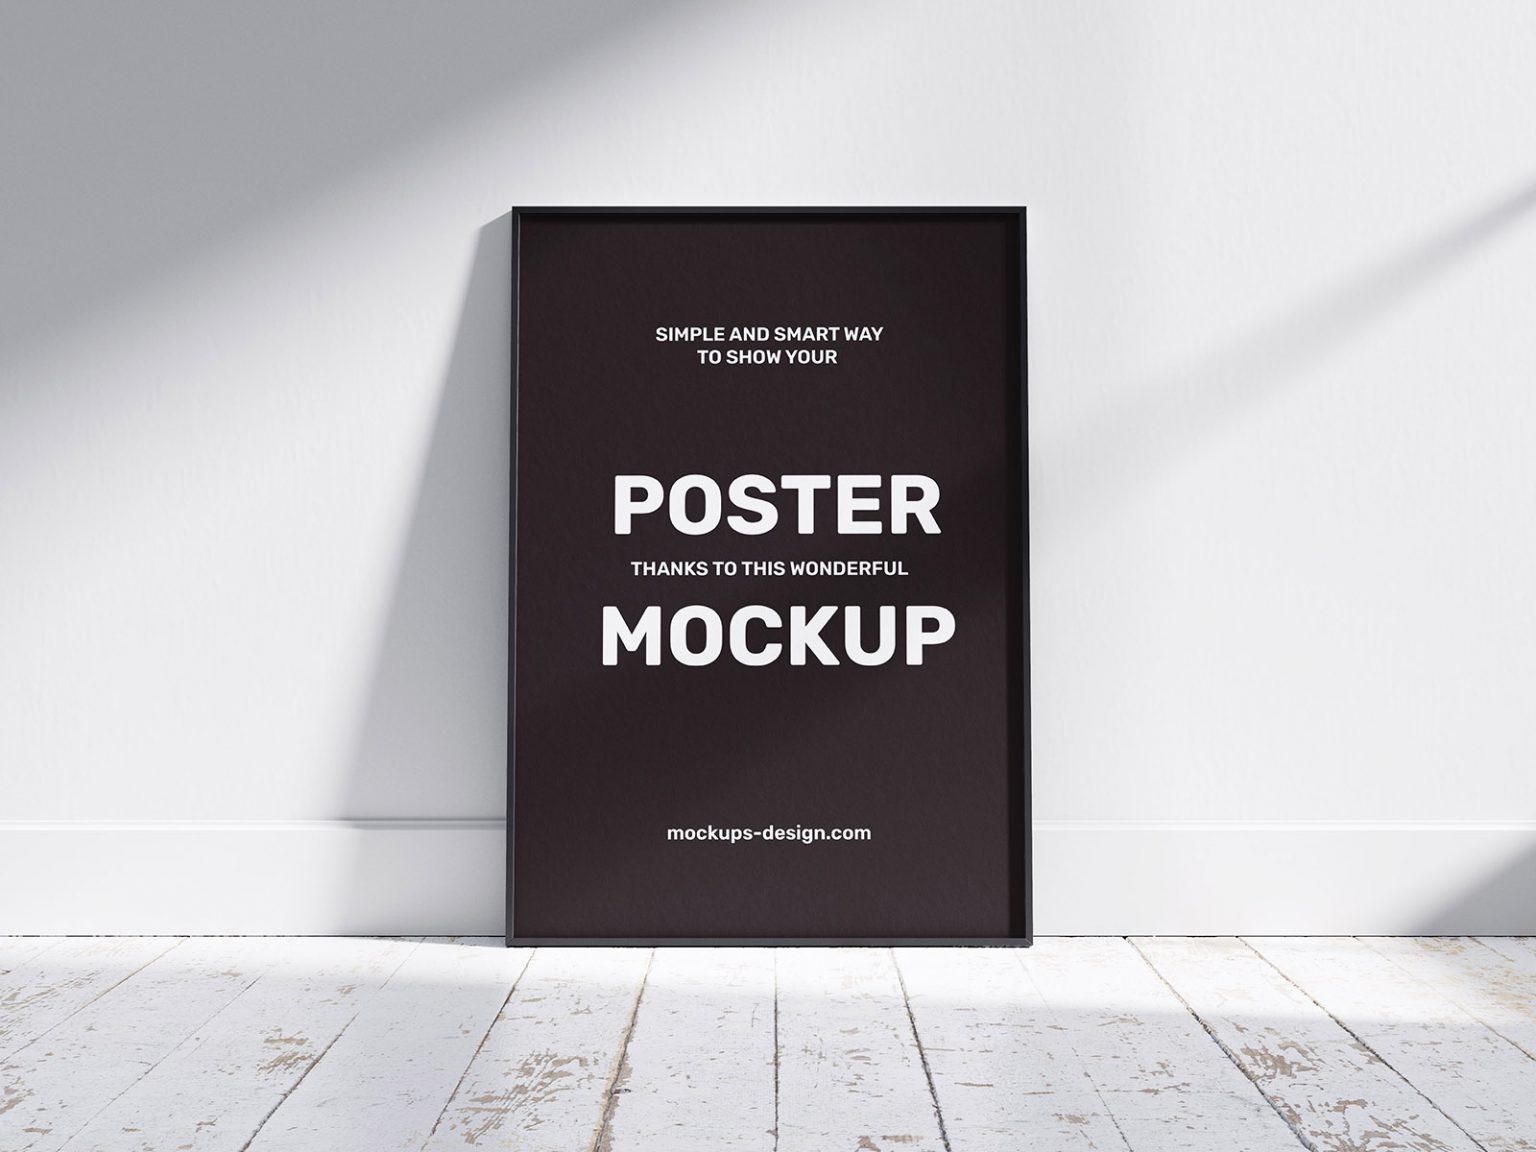 Free Poster Frame Mockups PSD